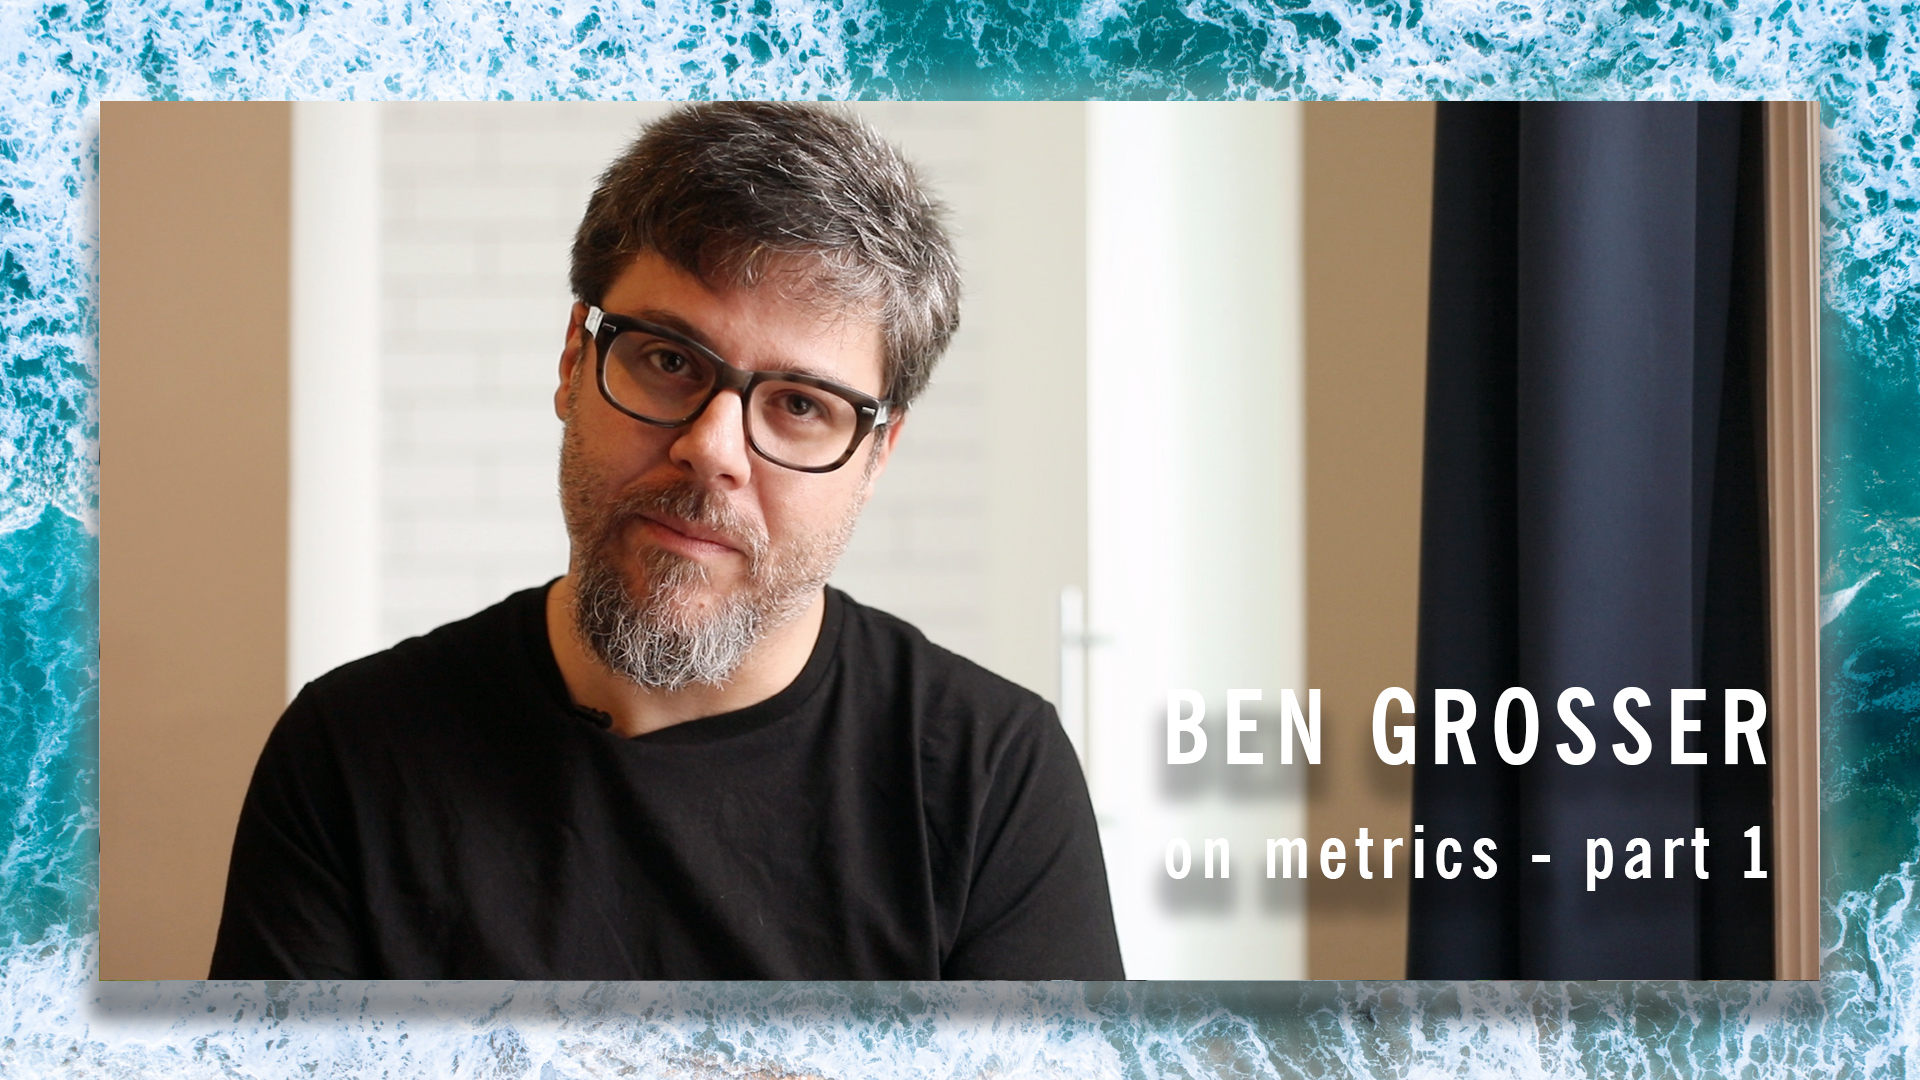 EXCLUSIVE VIDEO: Ben Grosser on metrics (part 1)